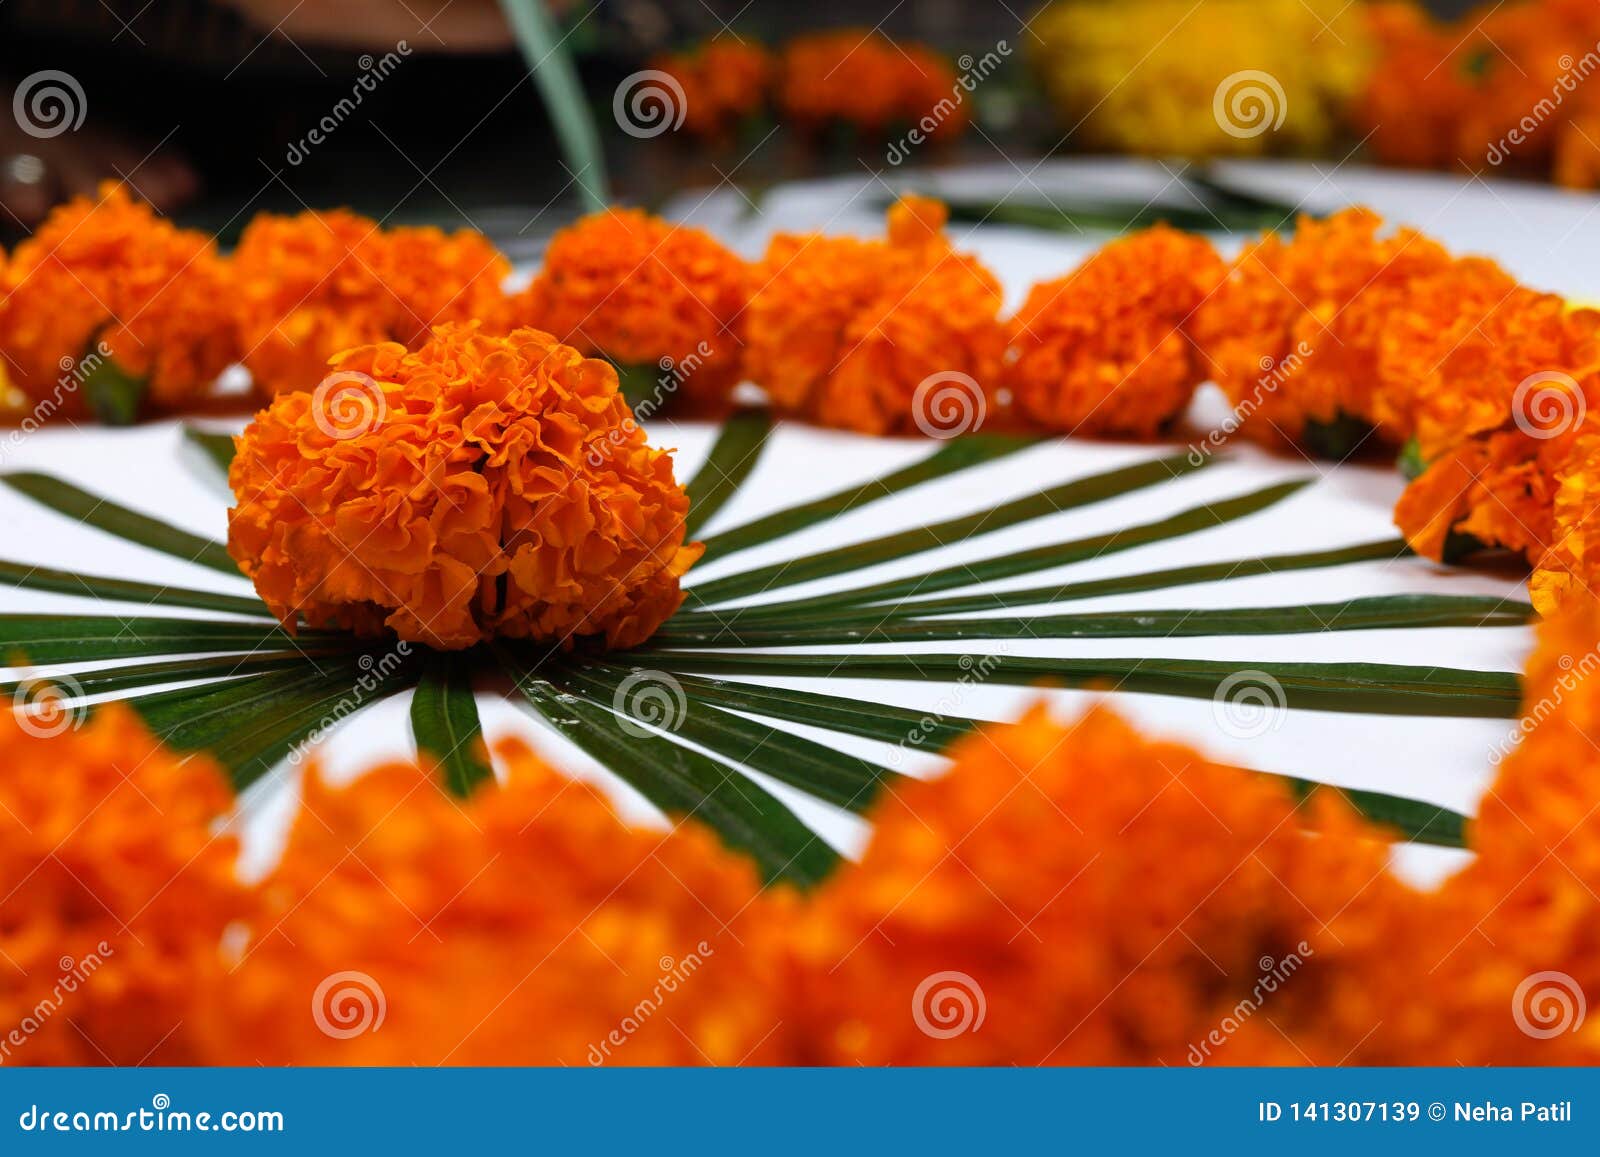 Marigold Flower Rangoli Design For Diwali Festival ...